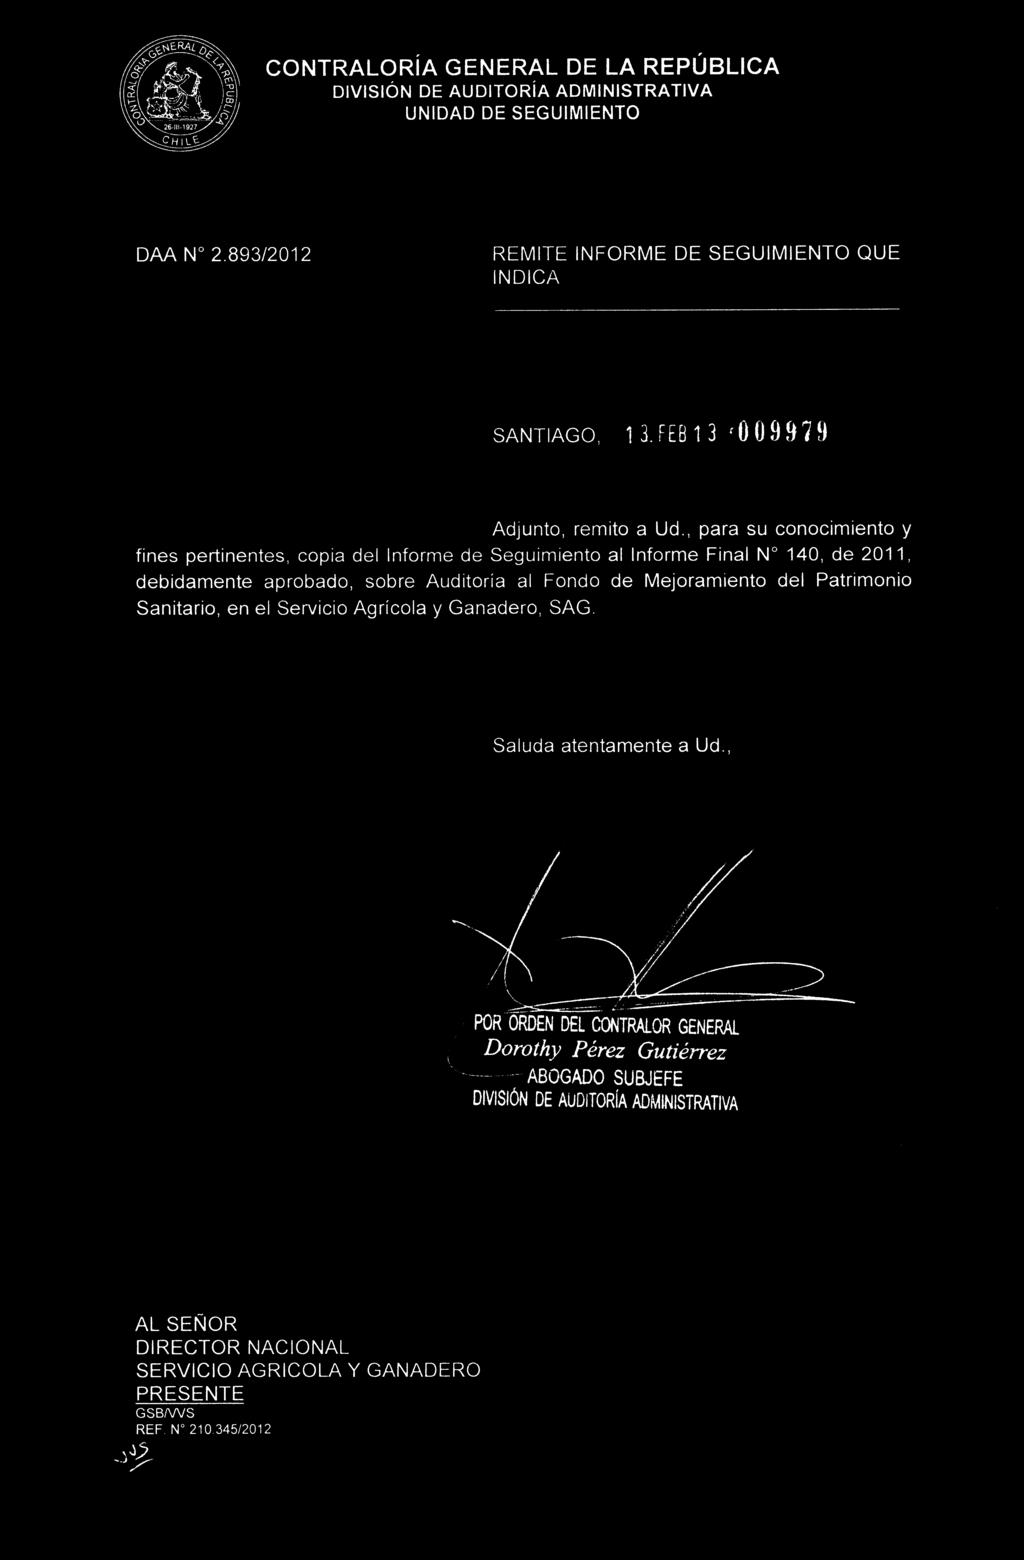 CONTRALORIA GENERAL DE LA REPUBLICA DAA N 2.893/2012 REMITE INFORME DE SEGUIMIENTO QUE INDICA SANTIAGO, 13.FEB13 '009979 Adjunto, remito a Ud.